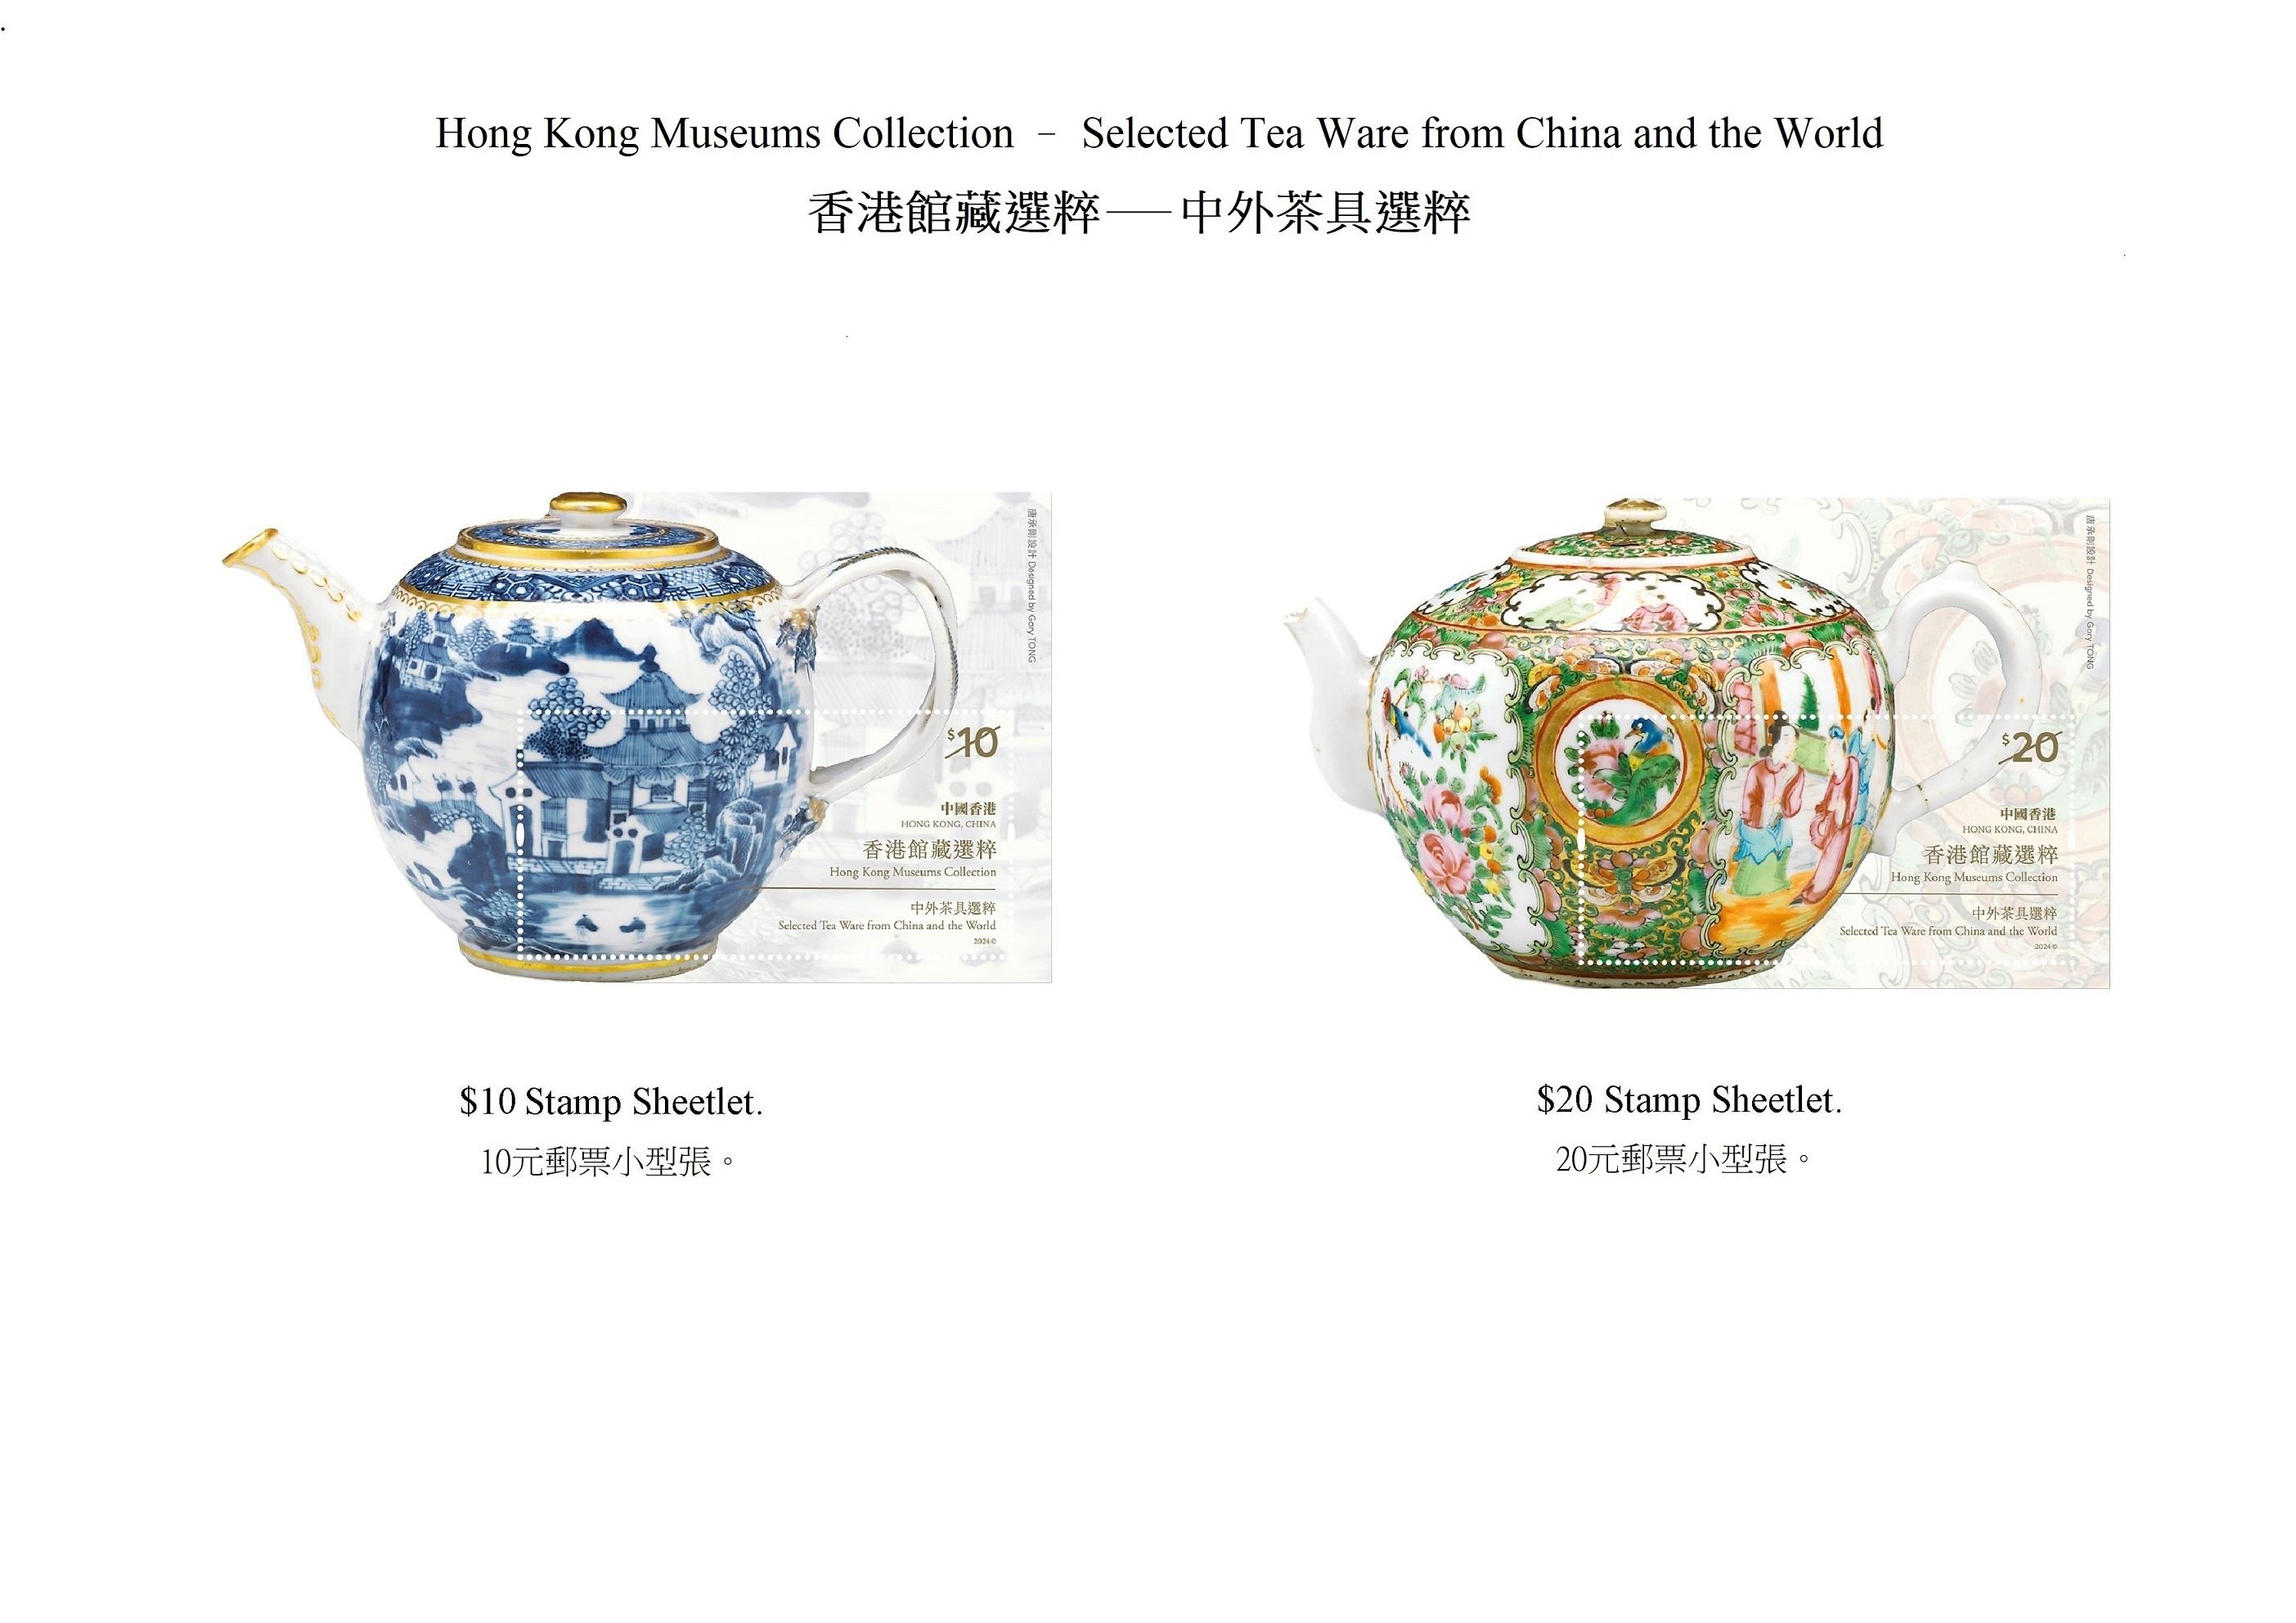 香港邮政四月十八日（星期四）发行以「香港馆藏选粹──中外茶具选粹」为题的特别邮票及相关集邮品。图示邮票小型张。